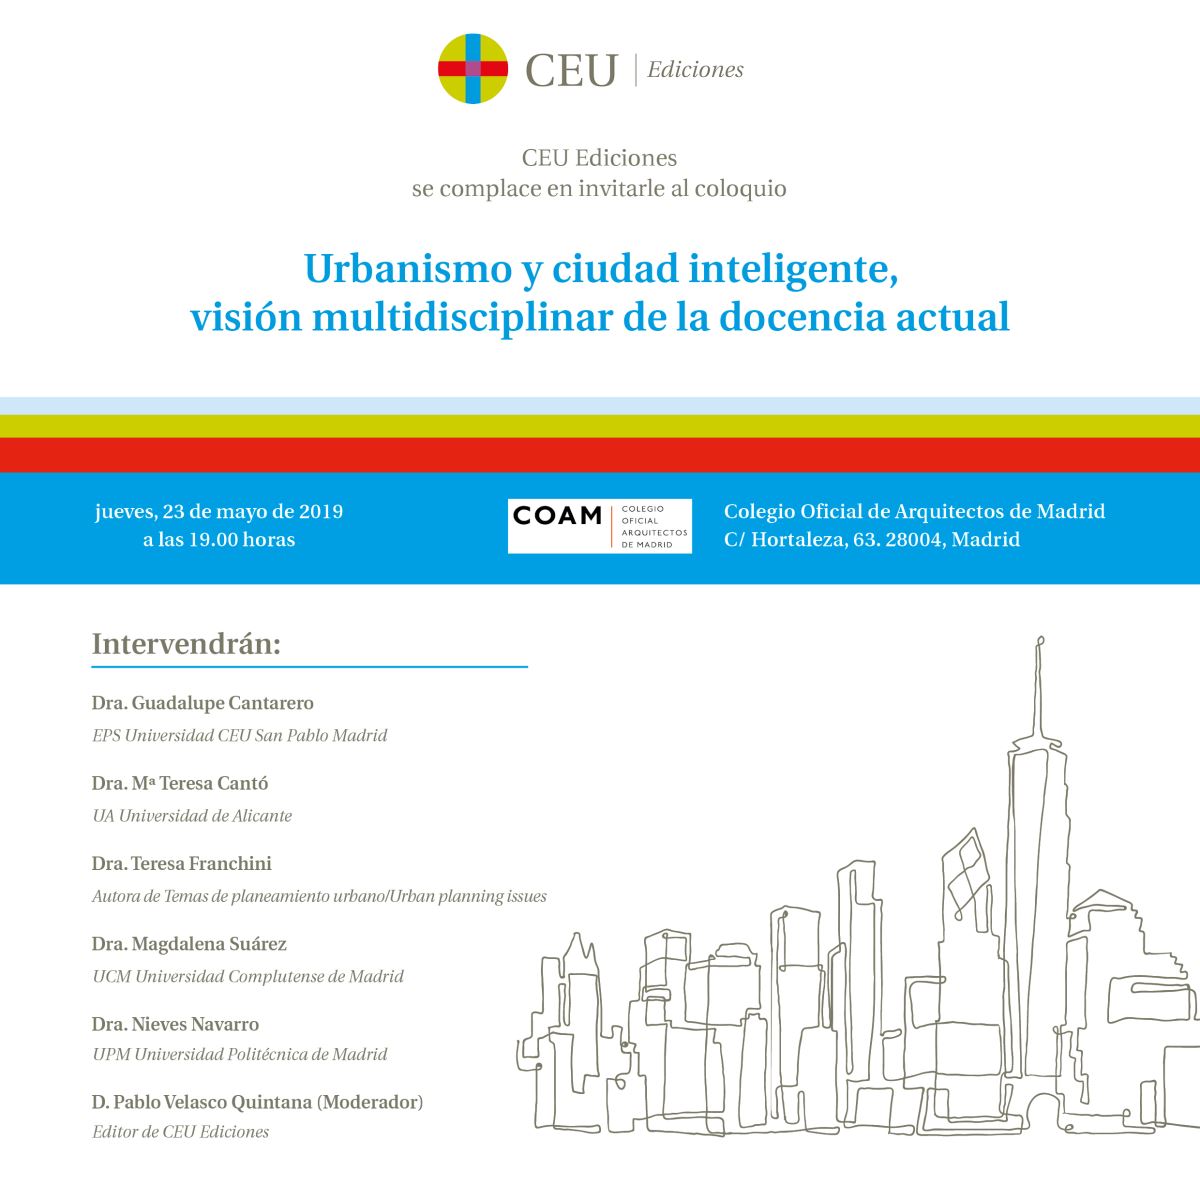 CEU Ediciones presenta el libro "Urbanismo y ciudad inteligente"